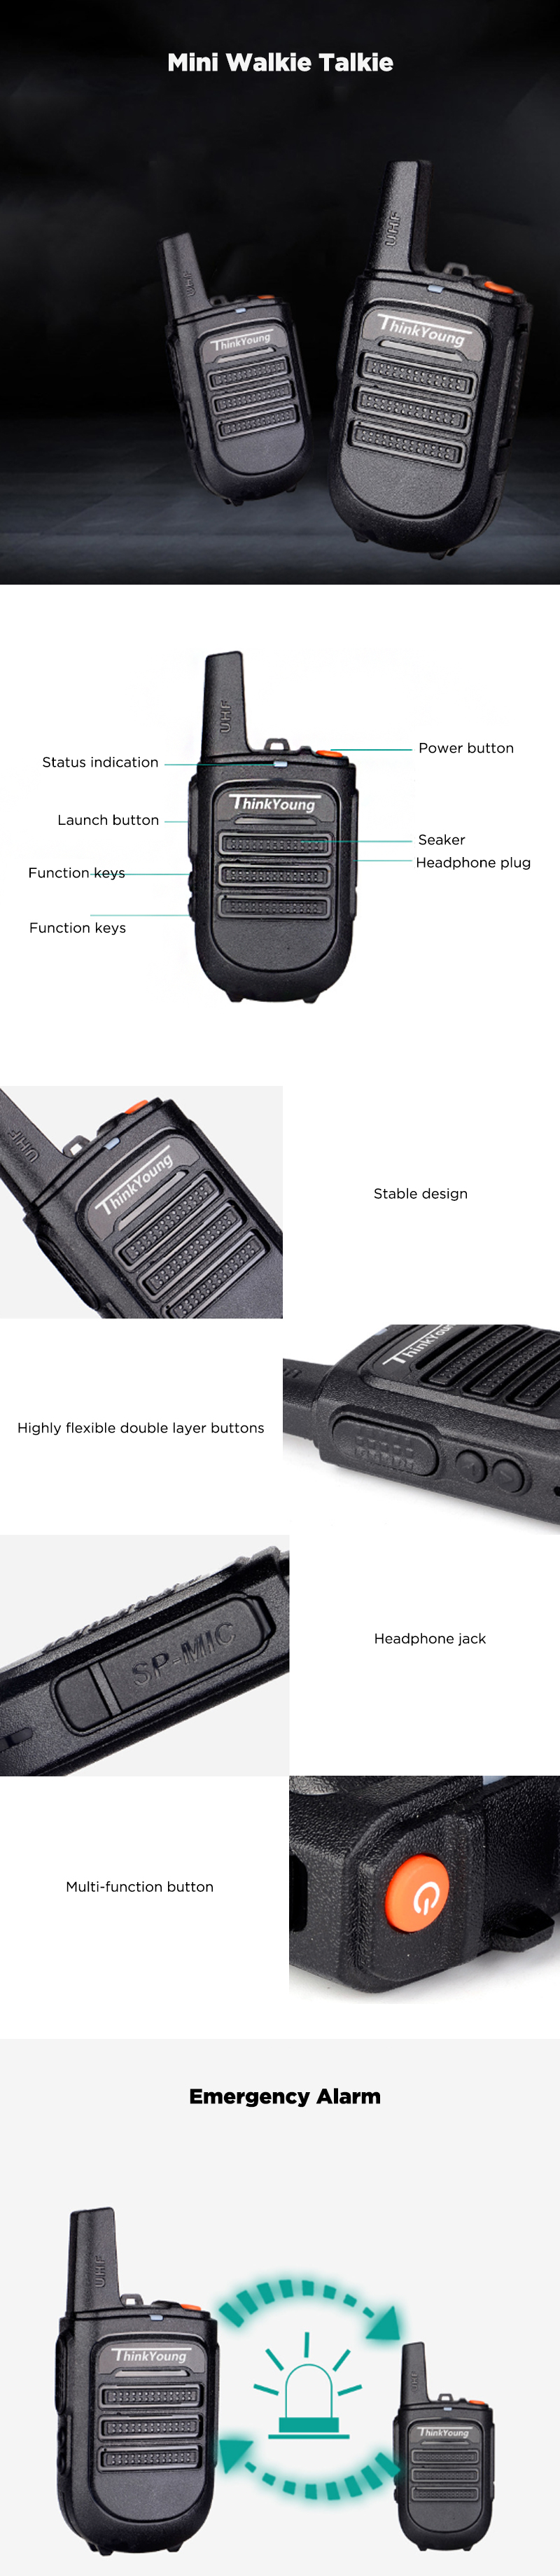 Thinkyoung-828-5W-IP54-Waterproof-Dustproof-Mini-Handheld-Radio-Walkie-Talkie-Interphone-Civilian-In-1617304-1